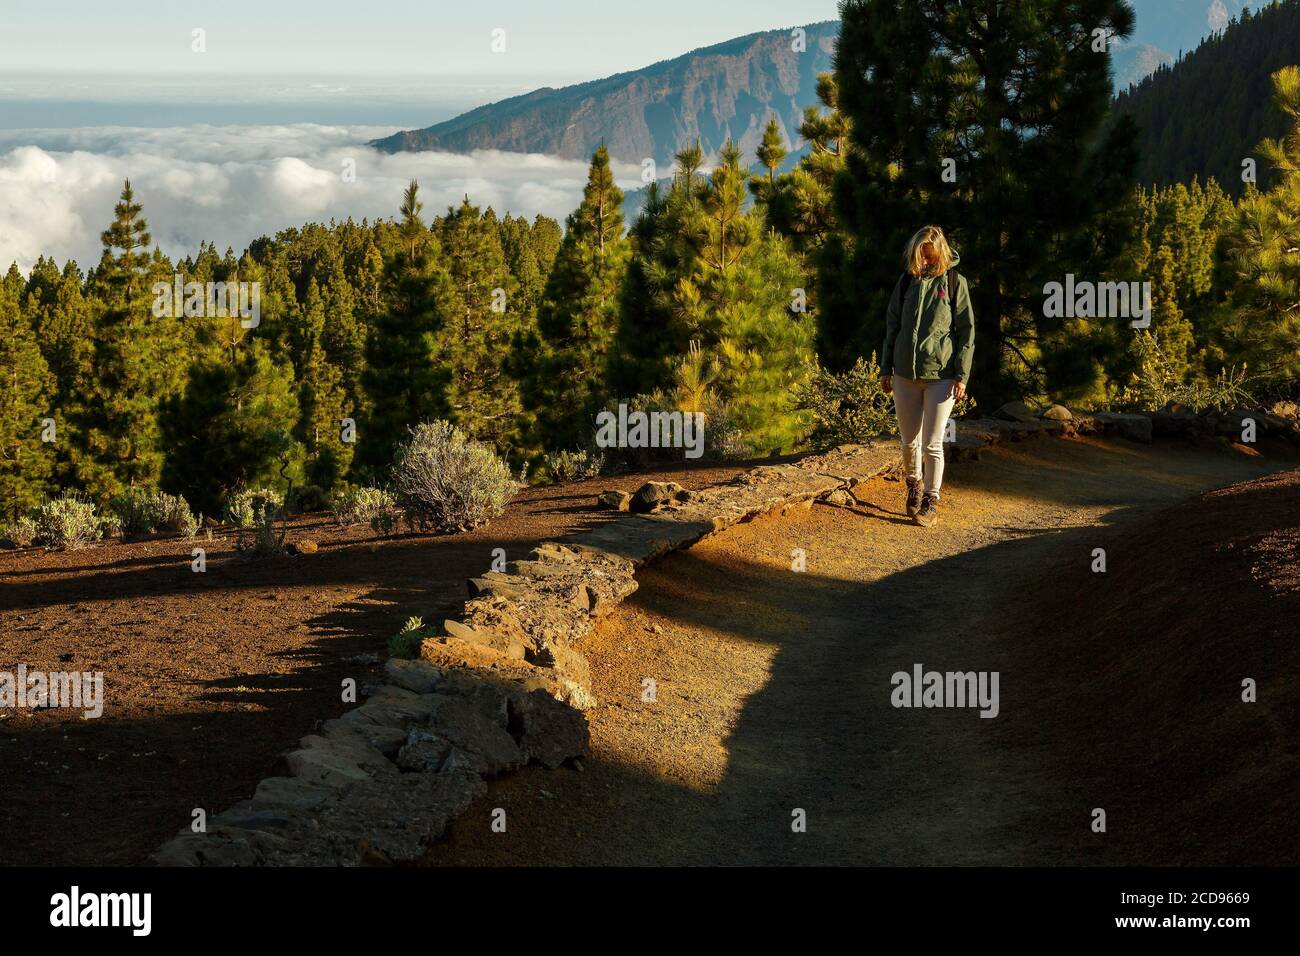 Spagna, Isole Canarie, la Palma, escursionista su un sentiero nel verde lussureggiante in un ambiente montano e vulcanico Foto Stock